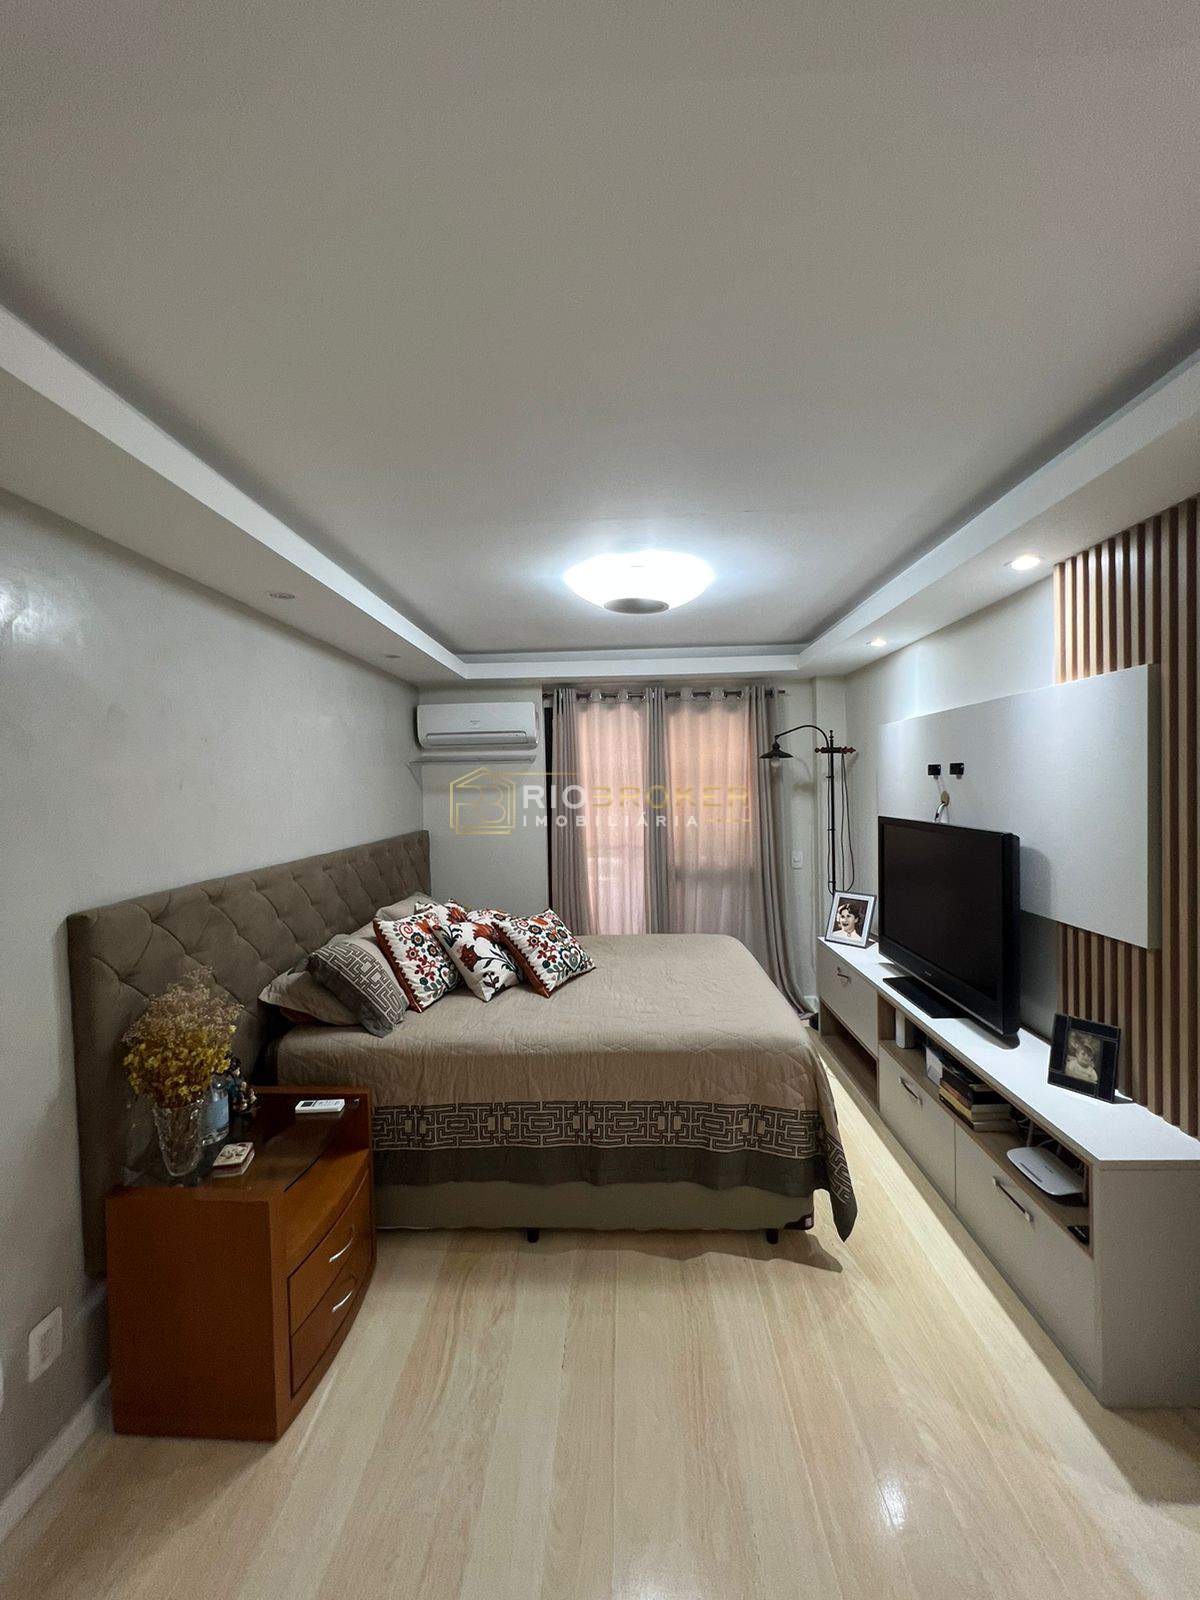 Apartamento de 3 quartos à venda - Recreio dos Bandeirantes - Condomínio Edifício Costa Verde